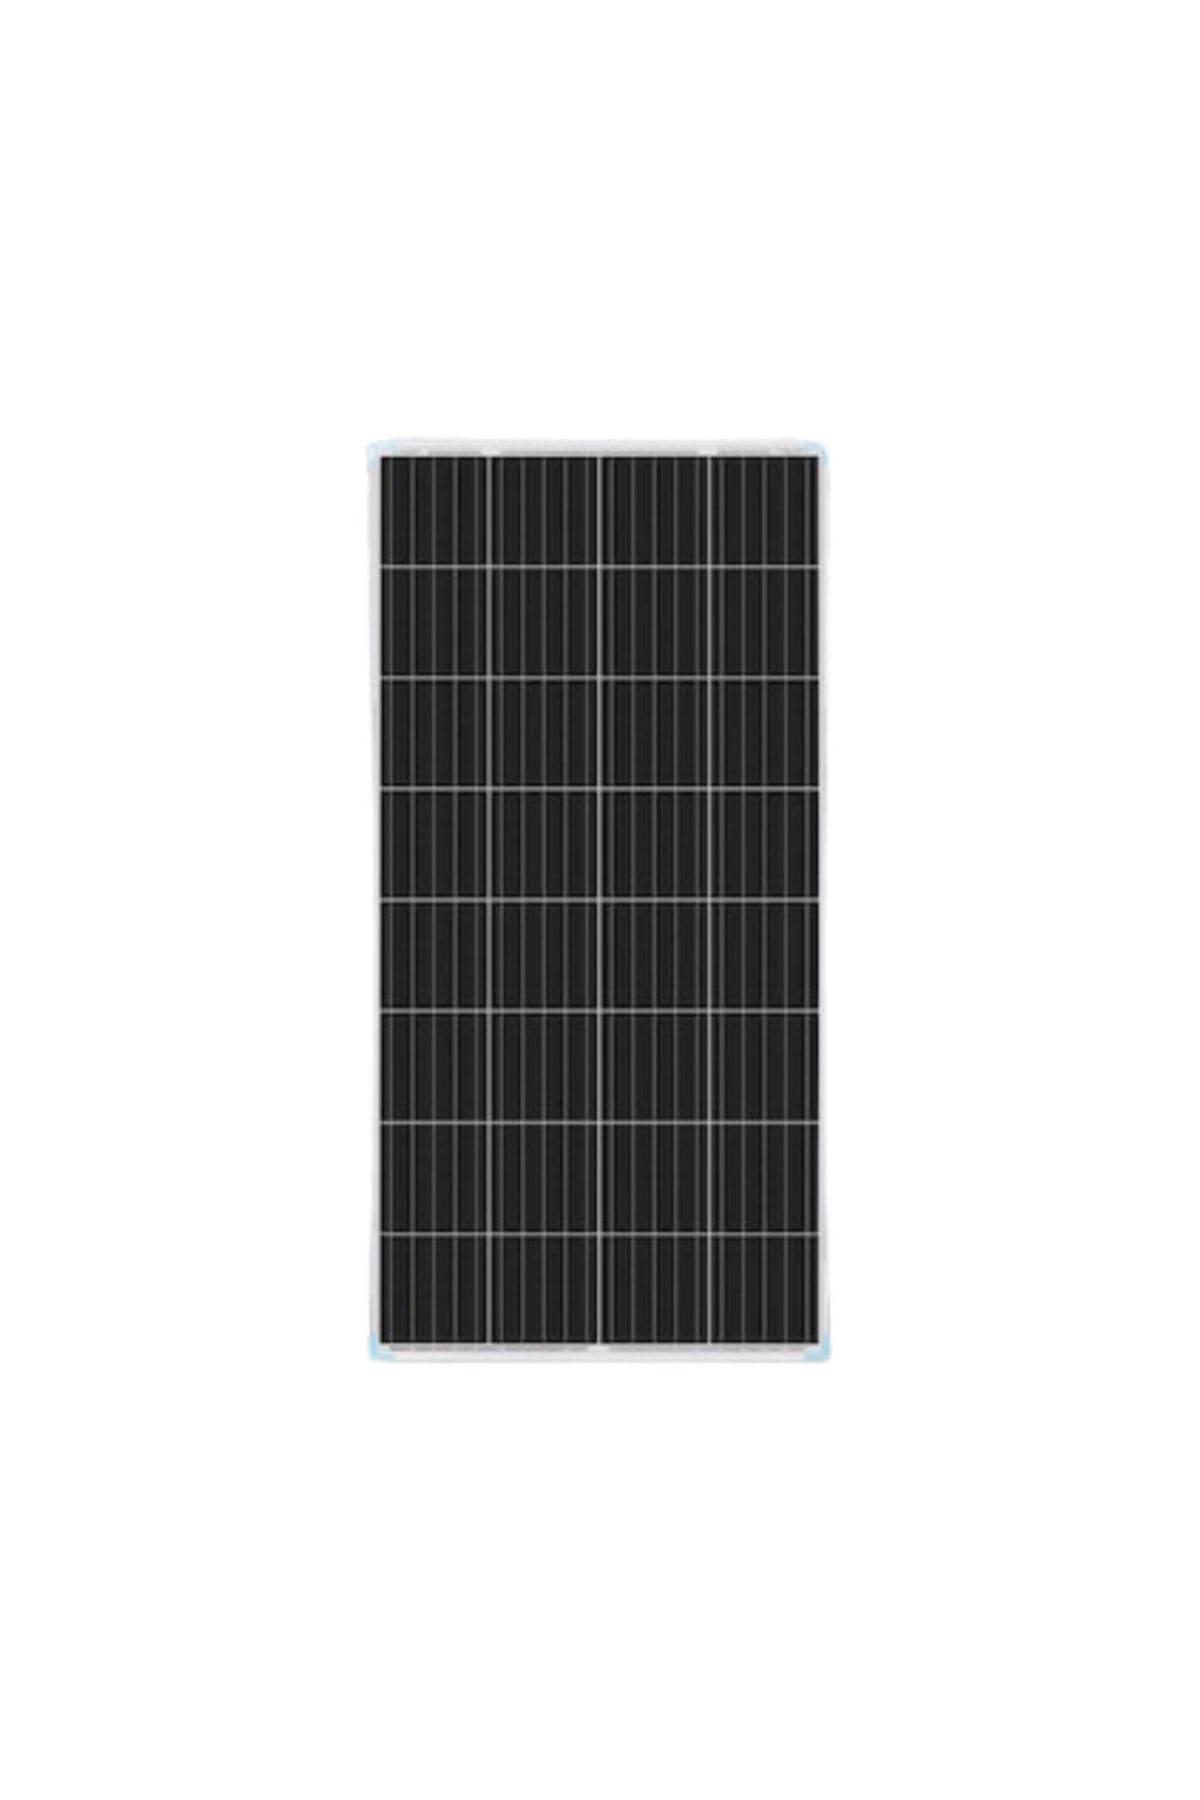 N&D Lighting 210 Watt Monokristal Solar Güneş Enerji Paneli